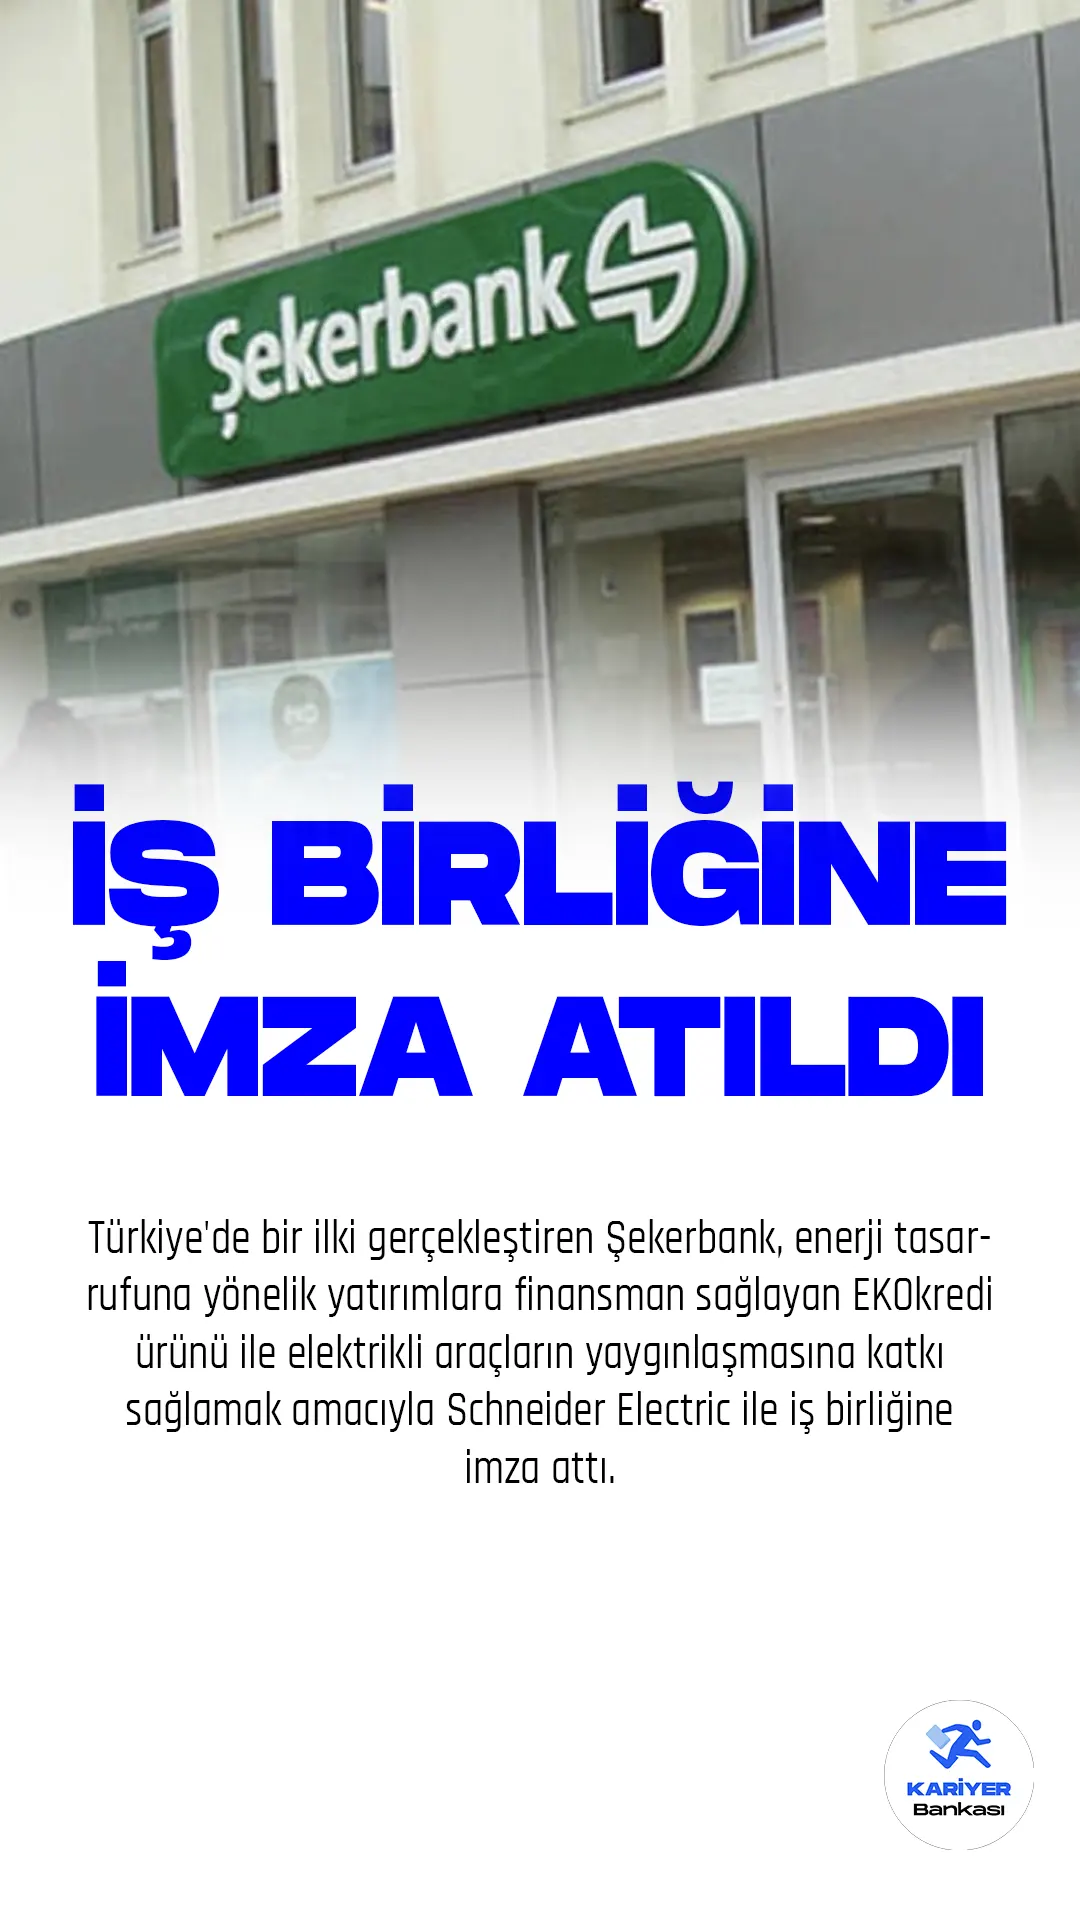 Türkiye'de bir ilki gerçekleştiren Şekerbank, enerji tasarrufuna yönelik yatırımlara finansman sağlayan EKOkredi ürünü ile elektrikli araçların yaygınlaşmasına katkı sağlamak amacıyla Schneider Electric ile iş birliğine imza attı.